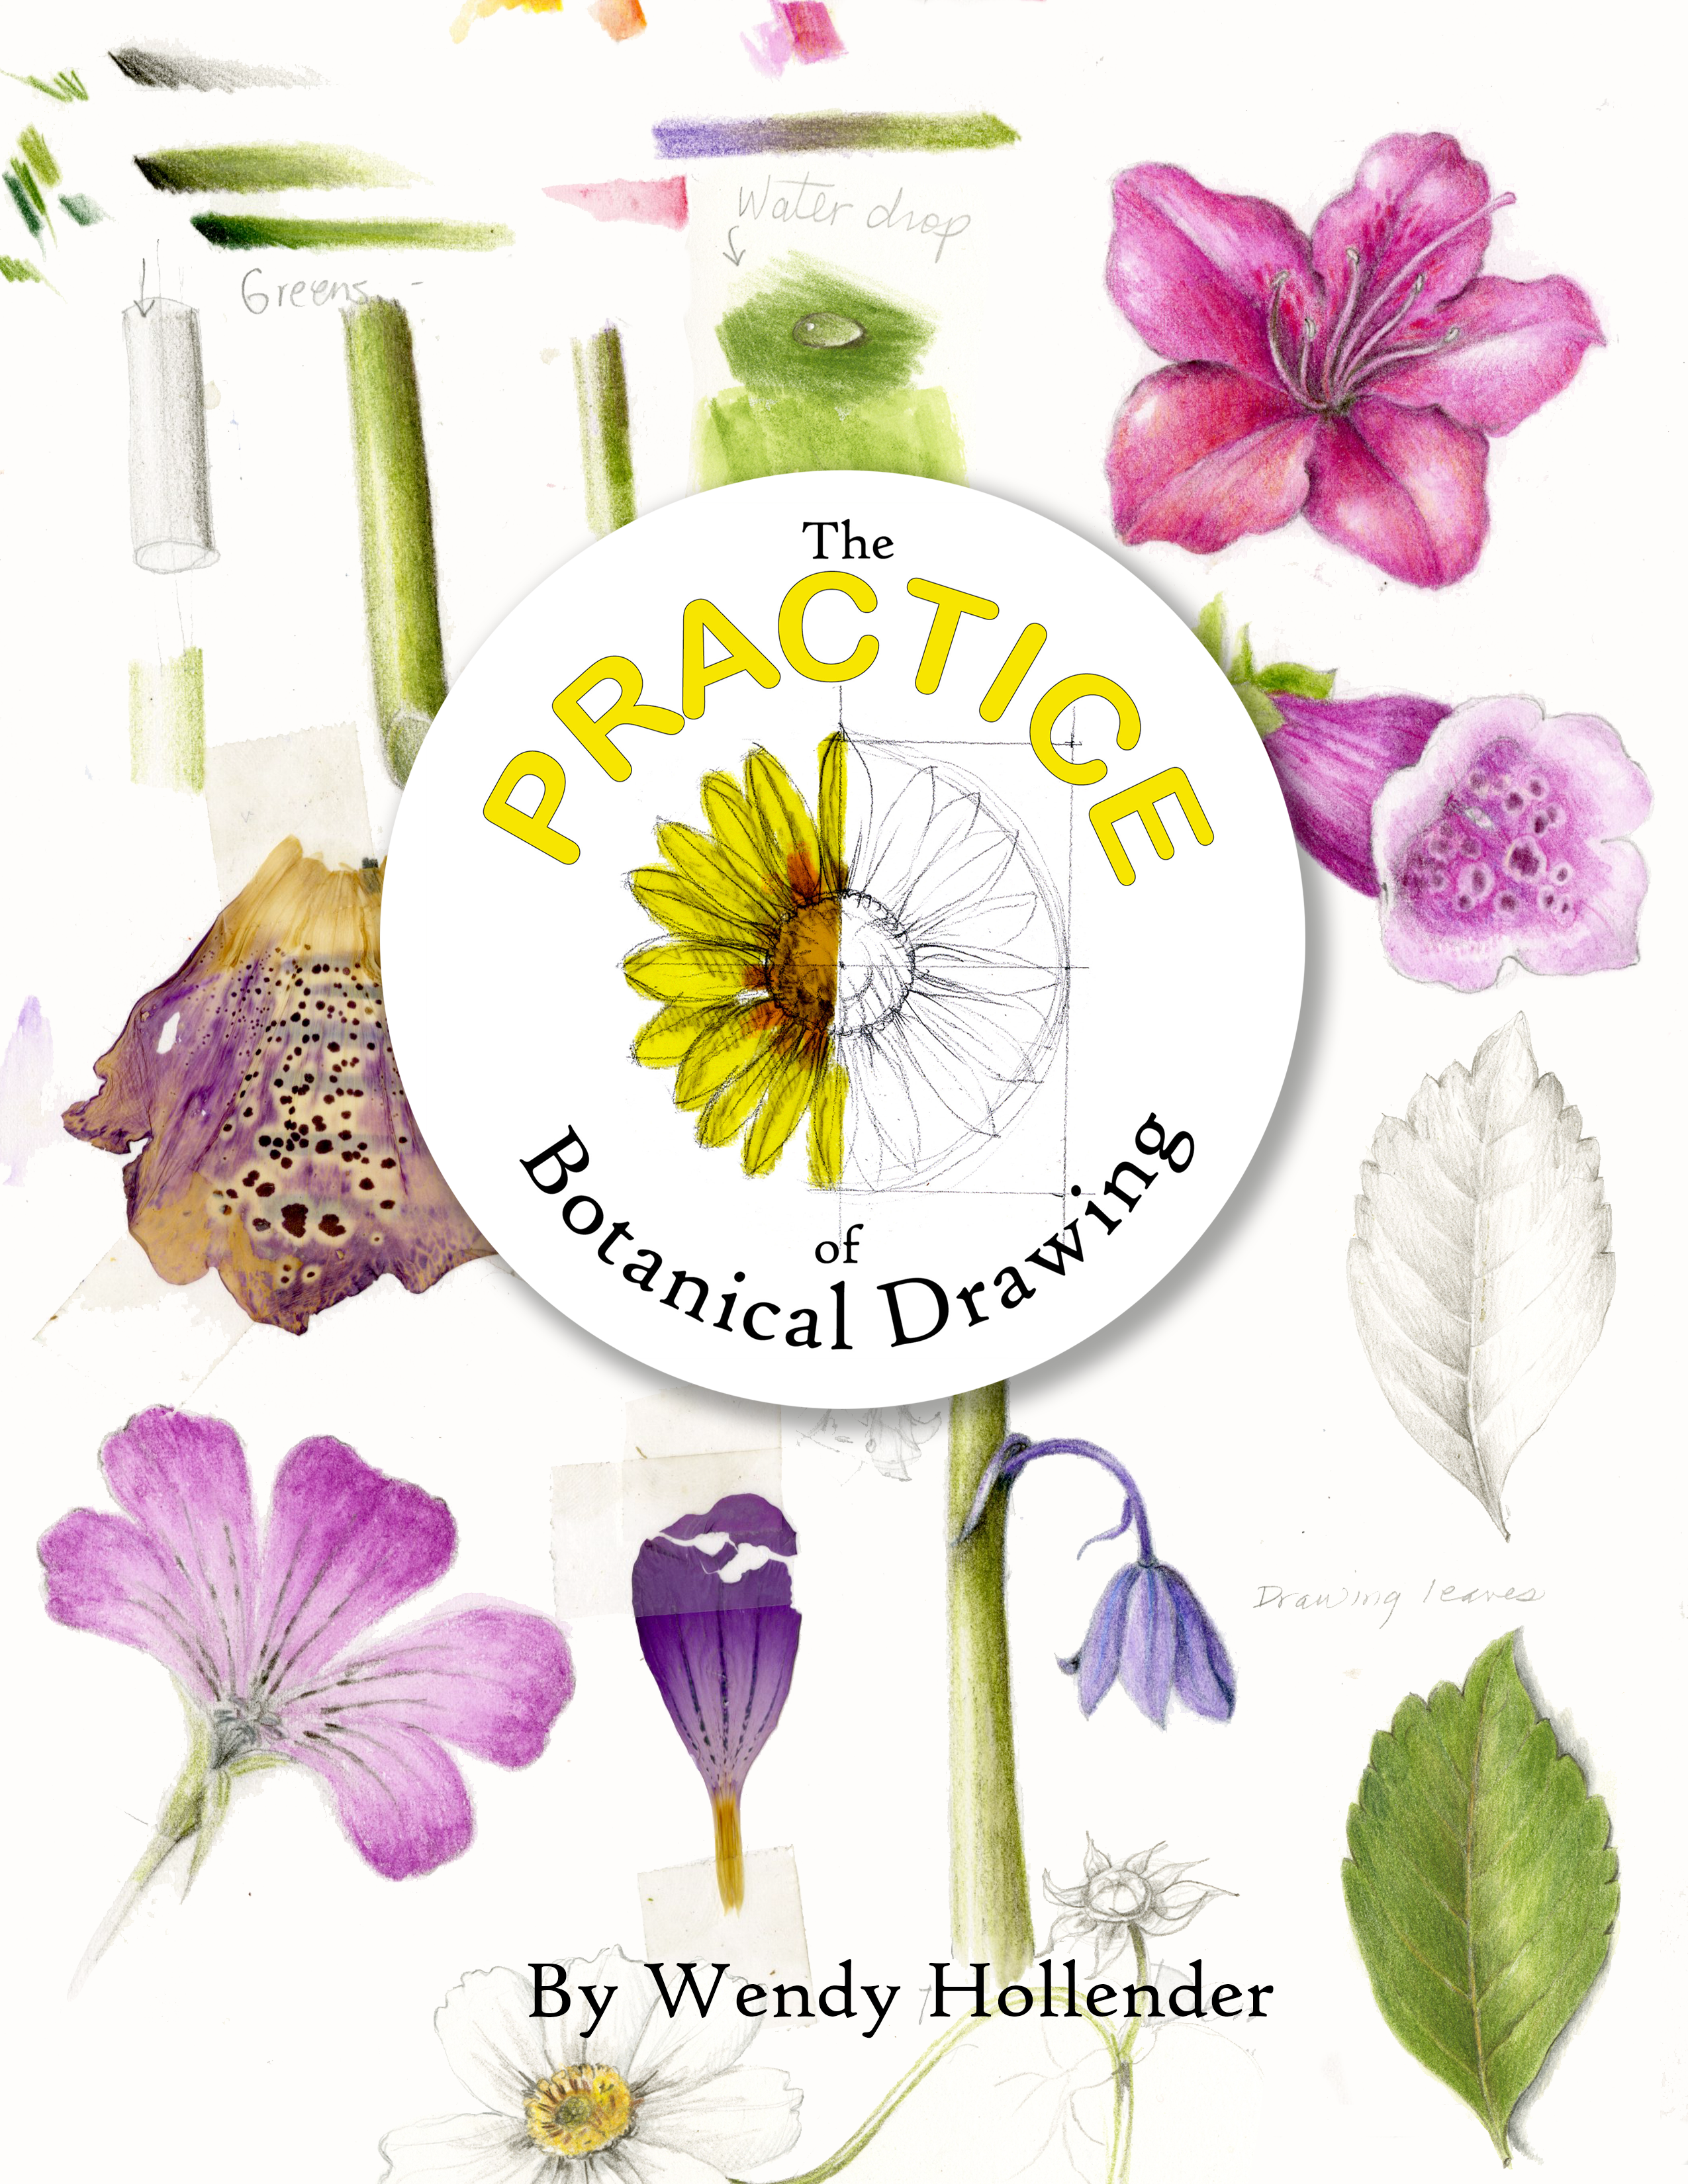 Art Supply Kit: Practice of Botanical Drawing - Draw Botanical LLC